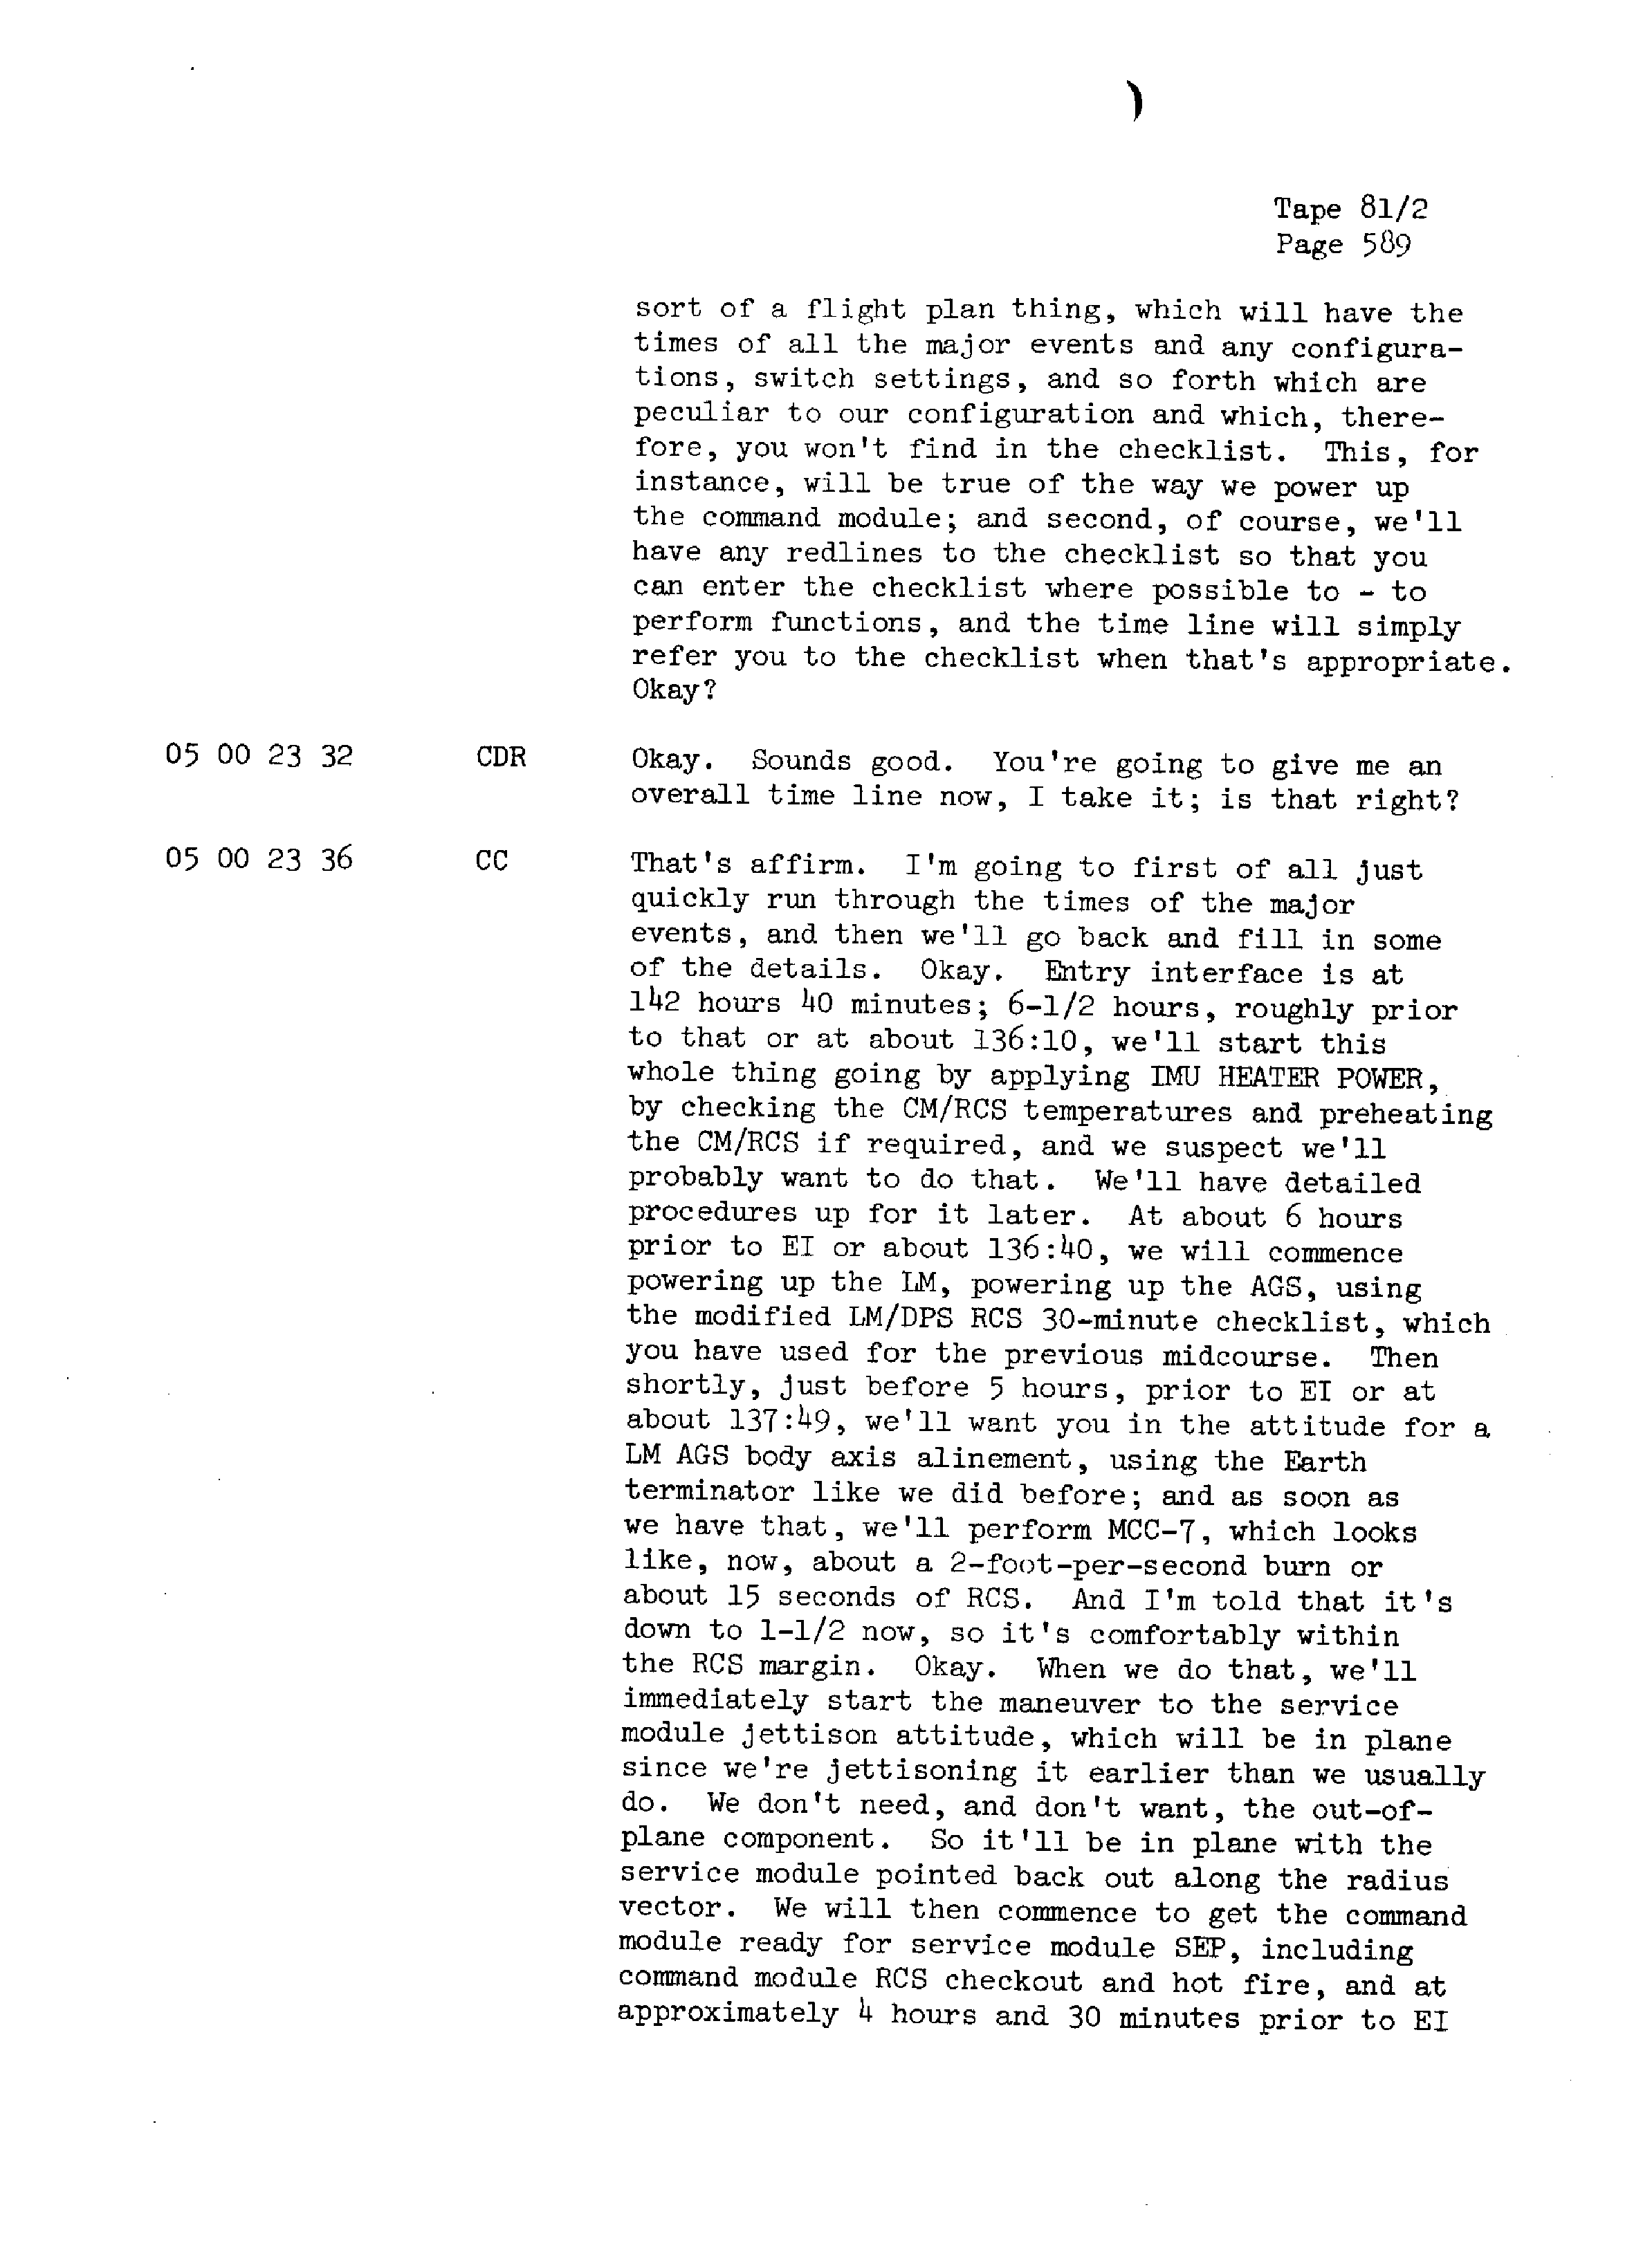 Page 596 of Apollo 13’s original transcript